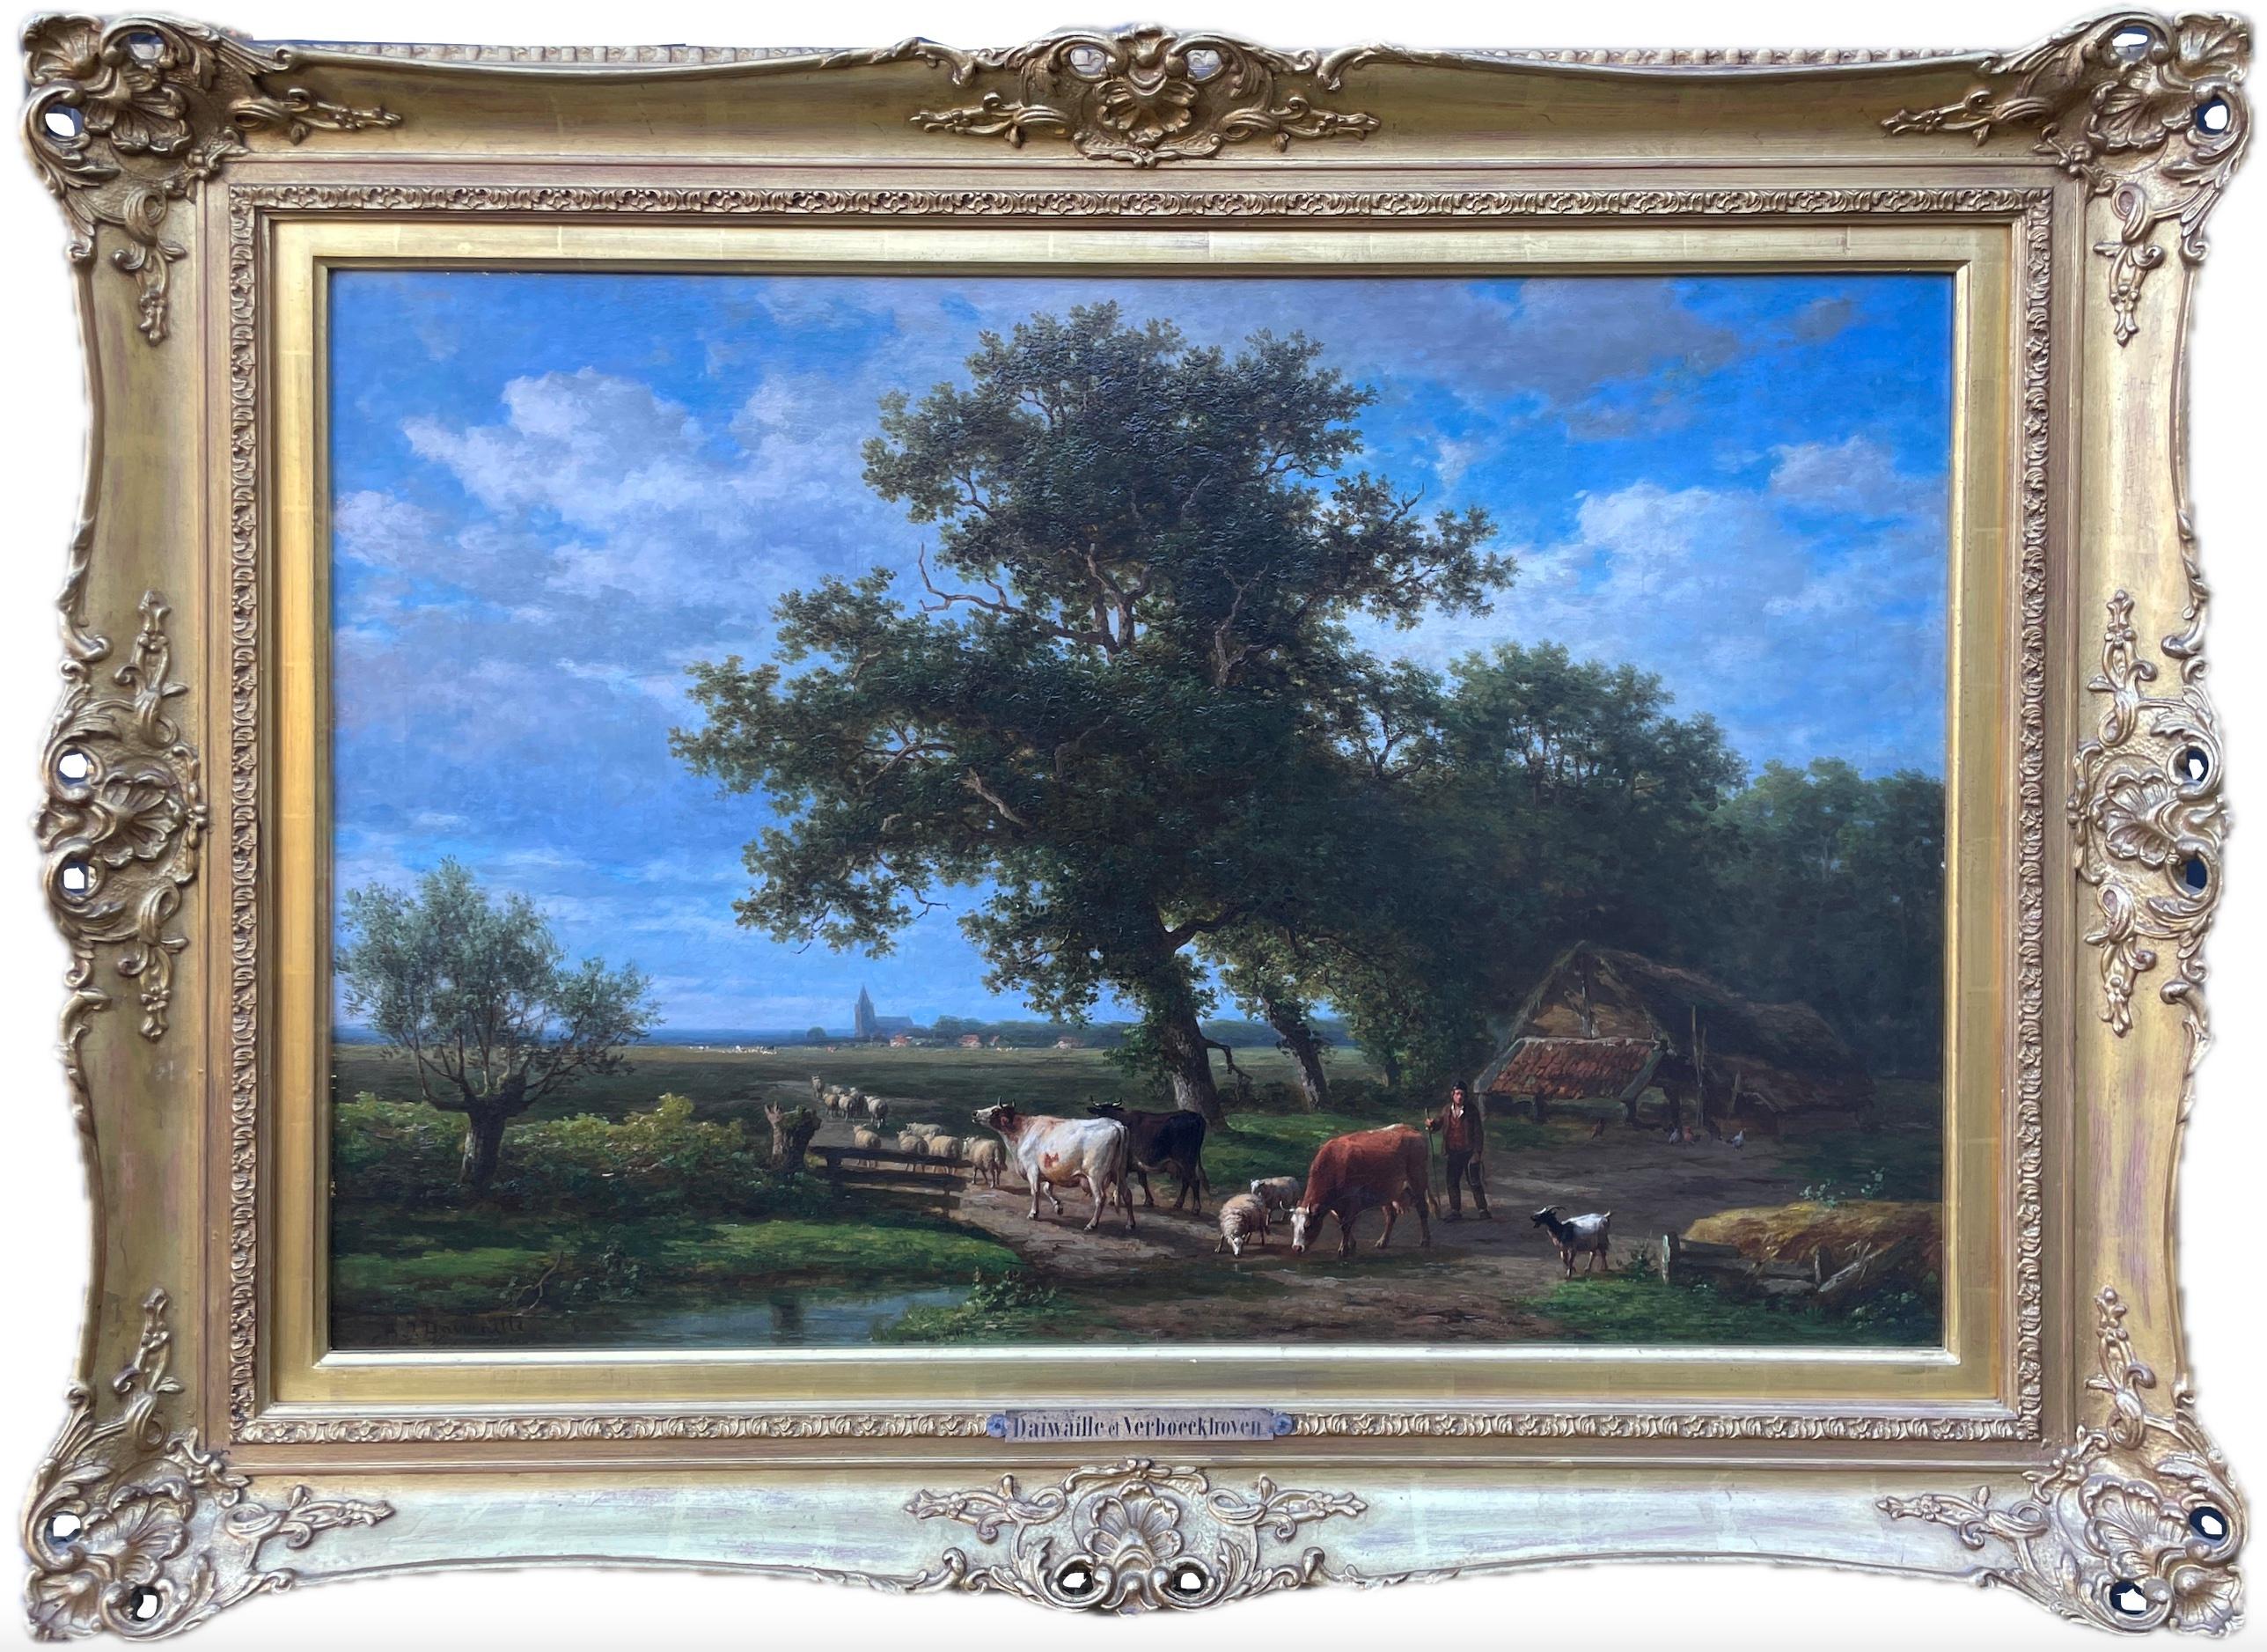 Öl auf Leinwand von Eugene Verboeckhoven & Alexander Daiwaille (1796-1881) (Realismus), Painting, von Eugène Verboeckhoven